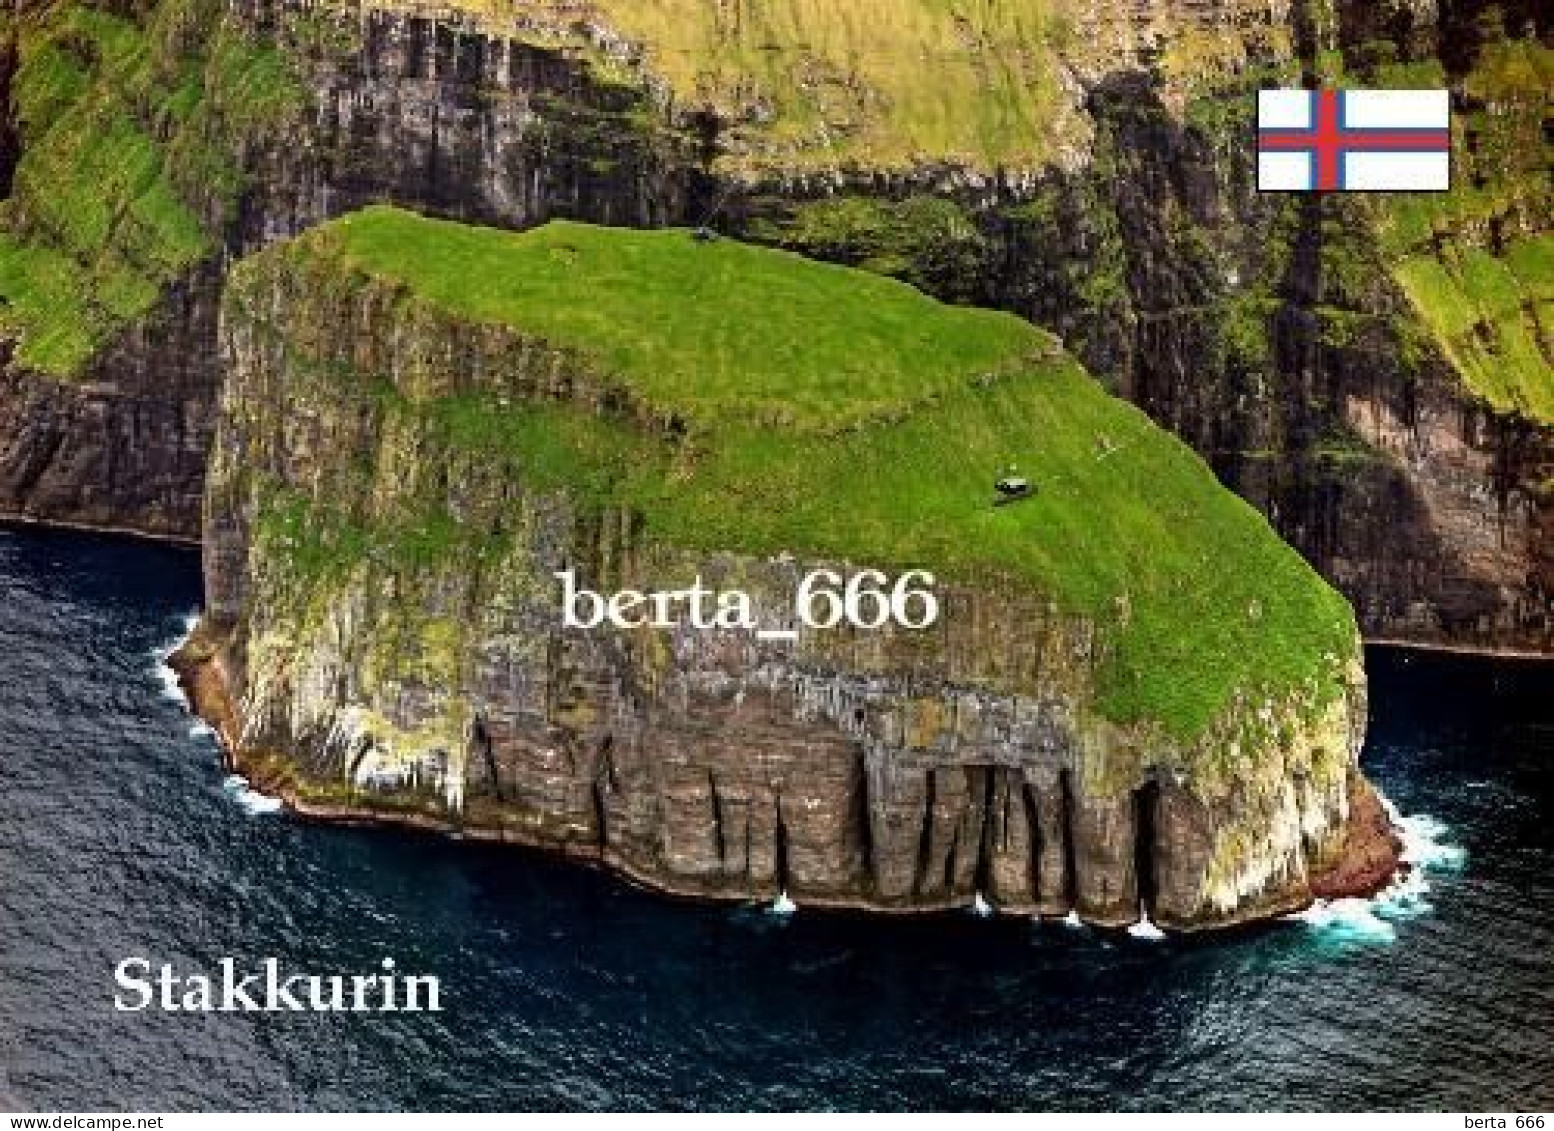 Faroe Islands Stakkurin Seastack New Postcard - Islas Feroe